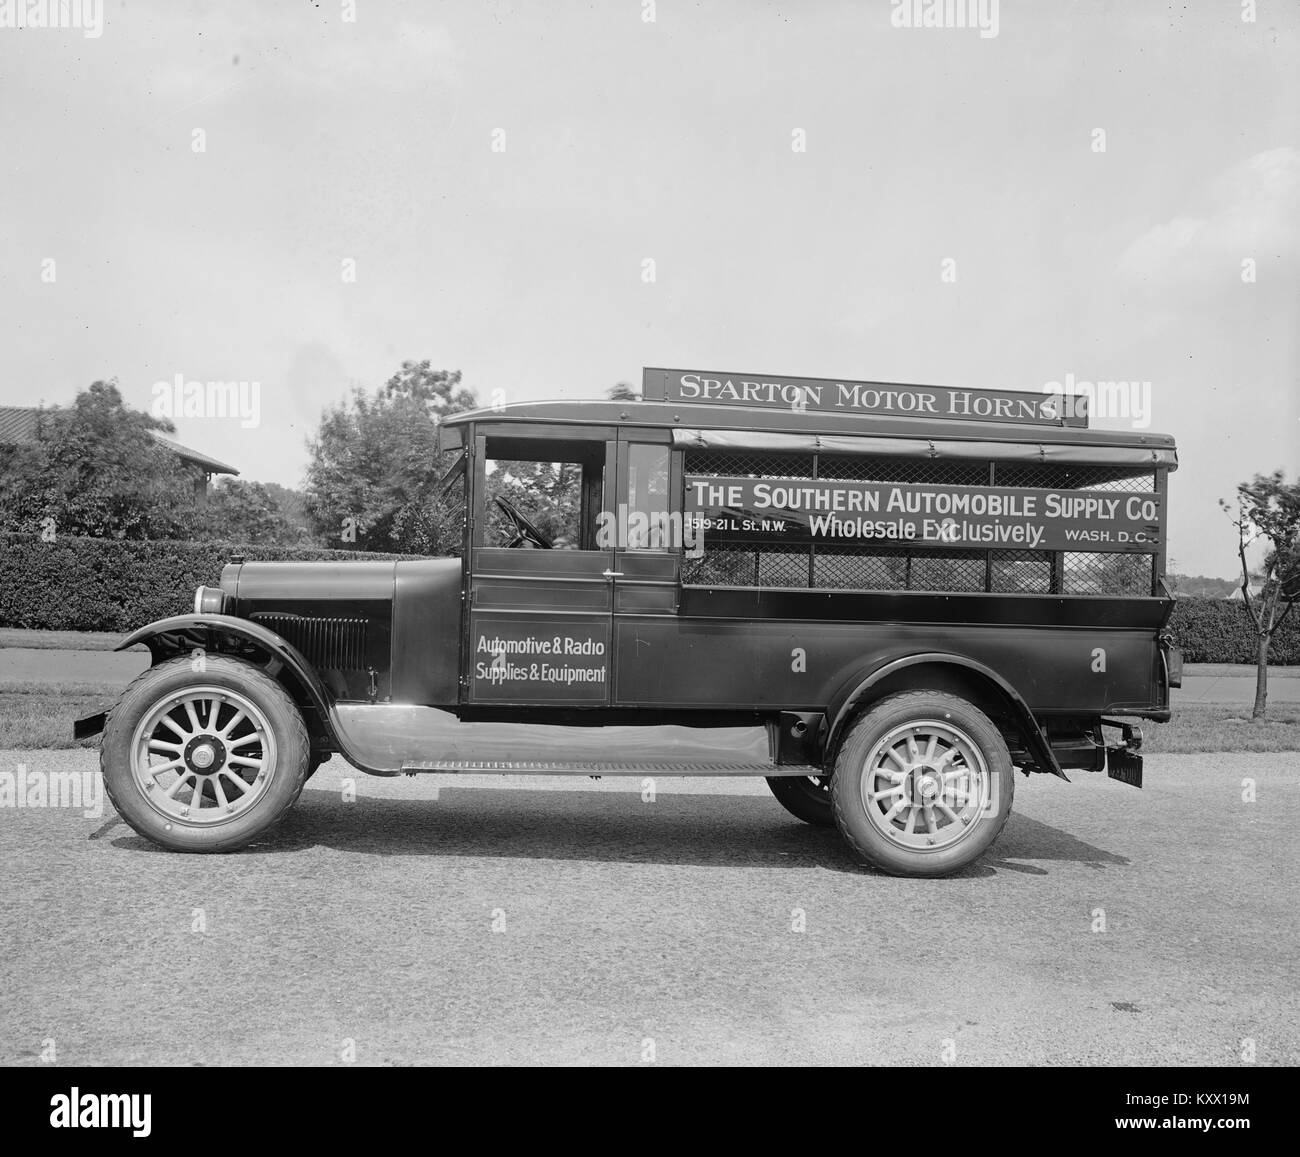 Sparton Motor Hörner, die südlichen Automobile Supply Co. Stockfoto